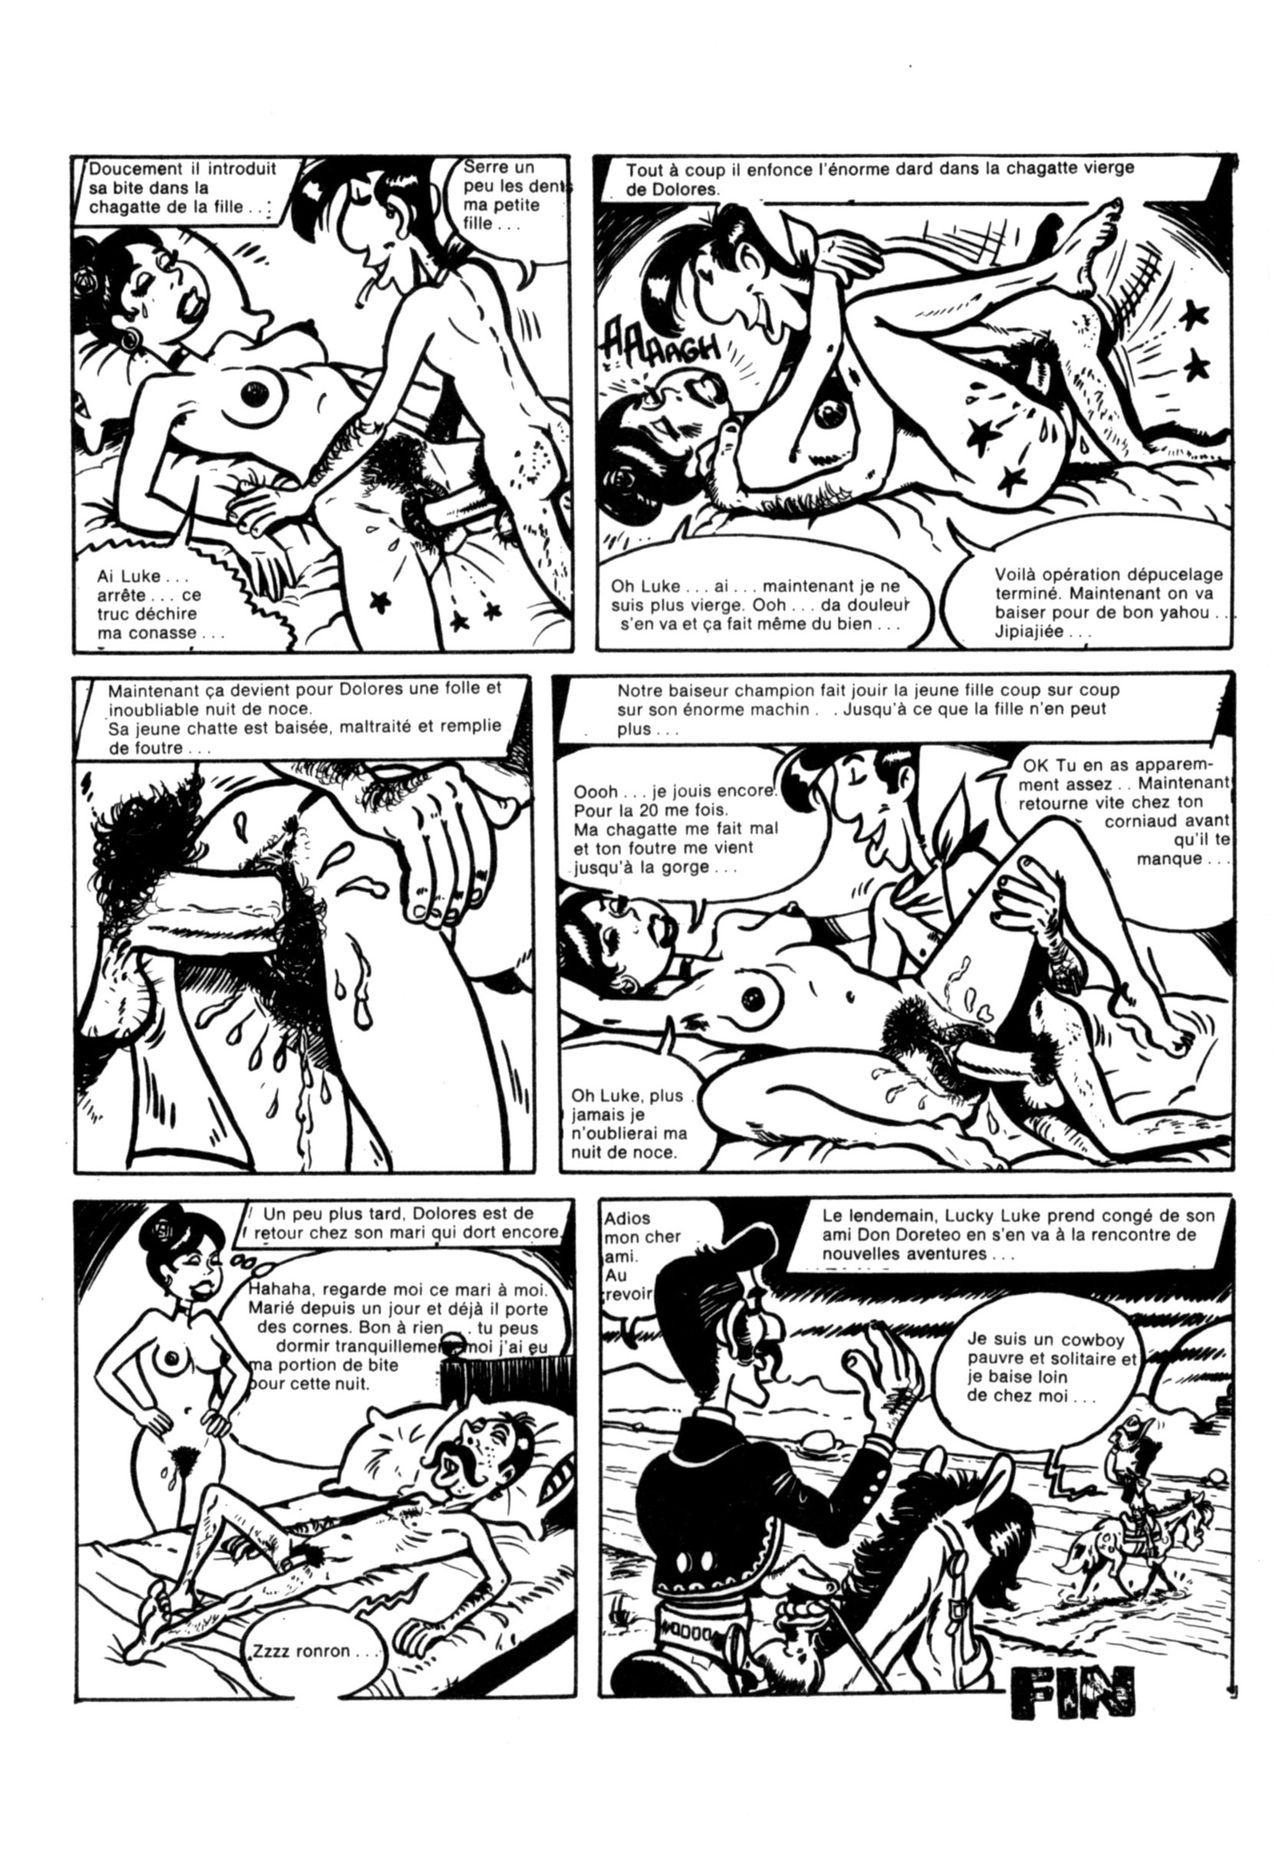 Schuurmans Les aventures sexuelles de Lucky Luke numero d'image 52